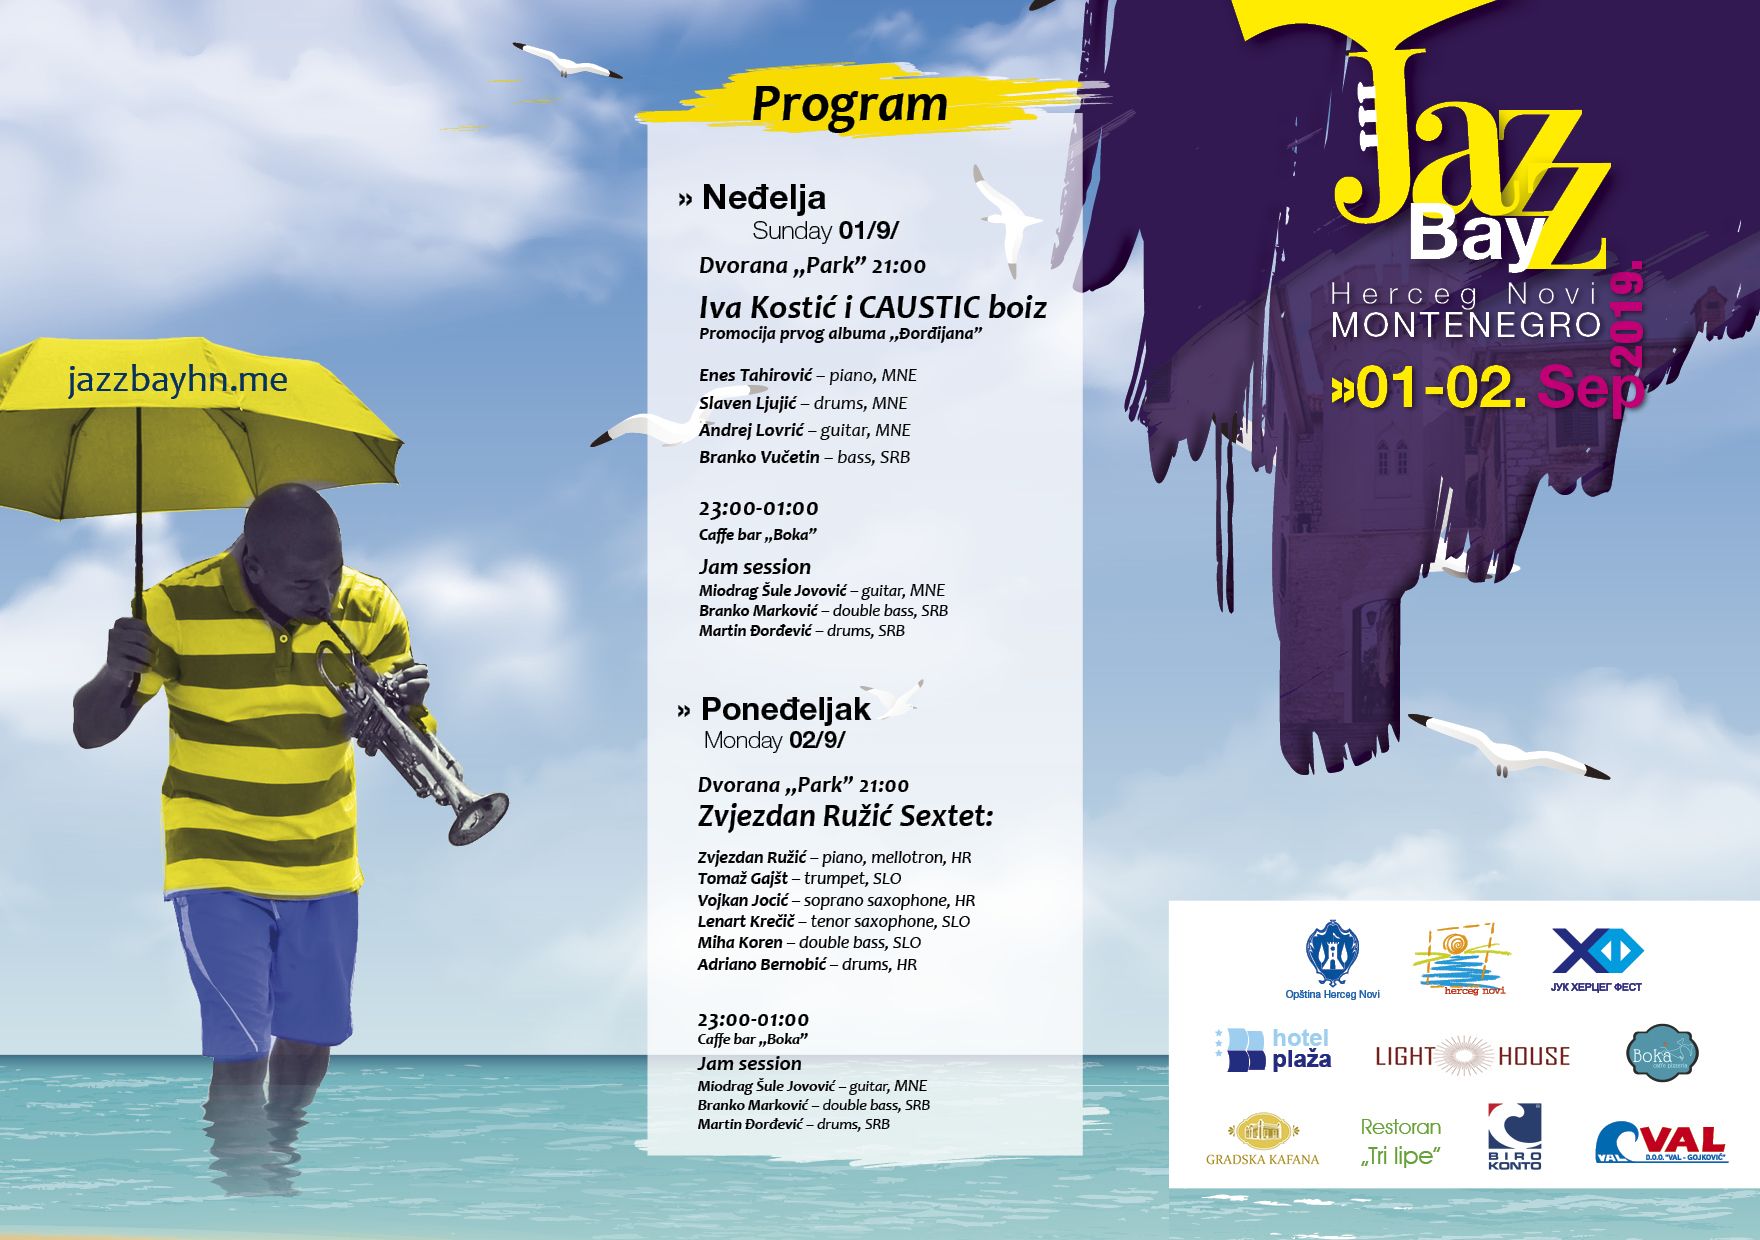 Jazz Bay Festival in Herceg Novi on September 1st and 2nd